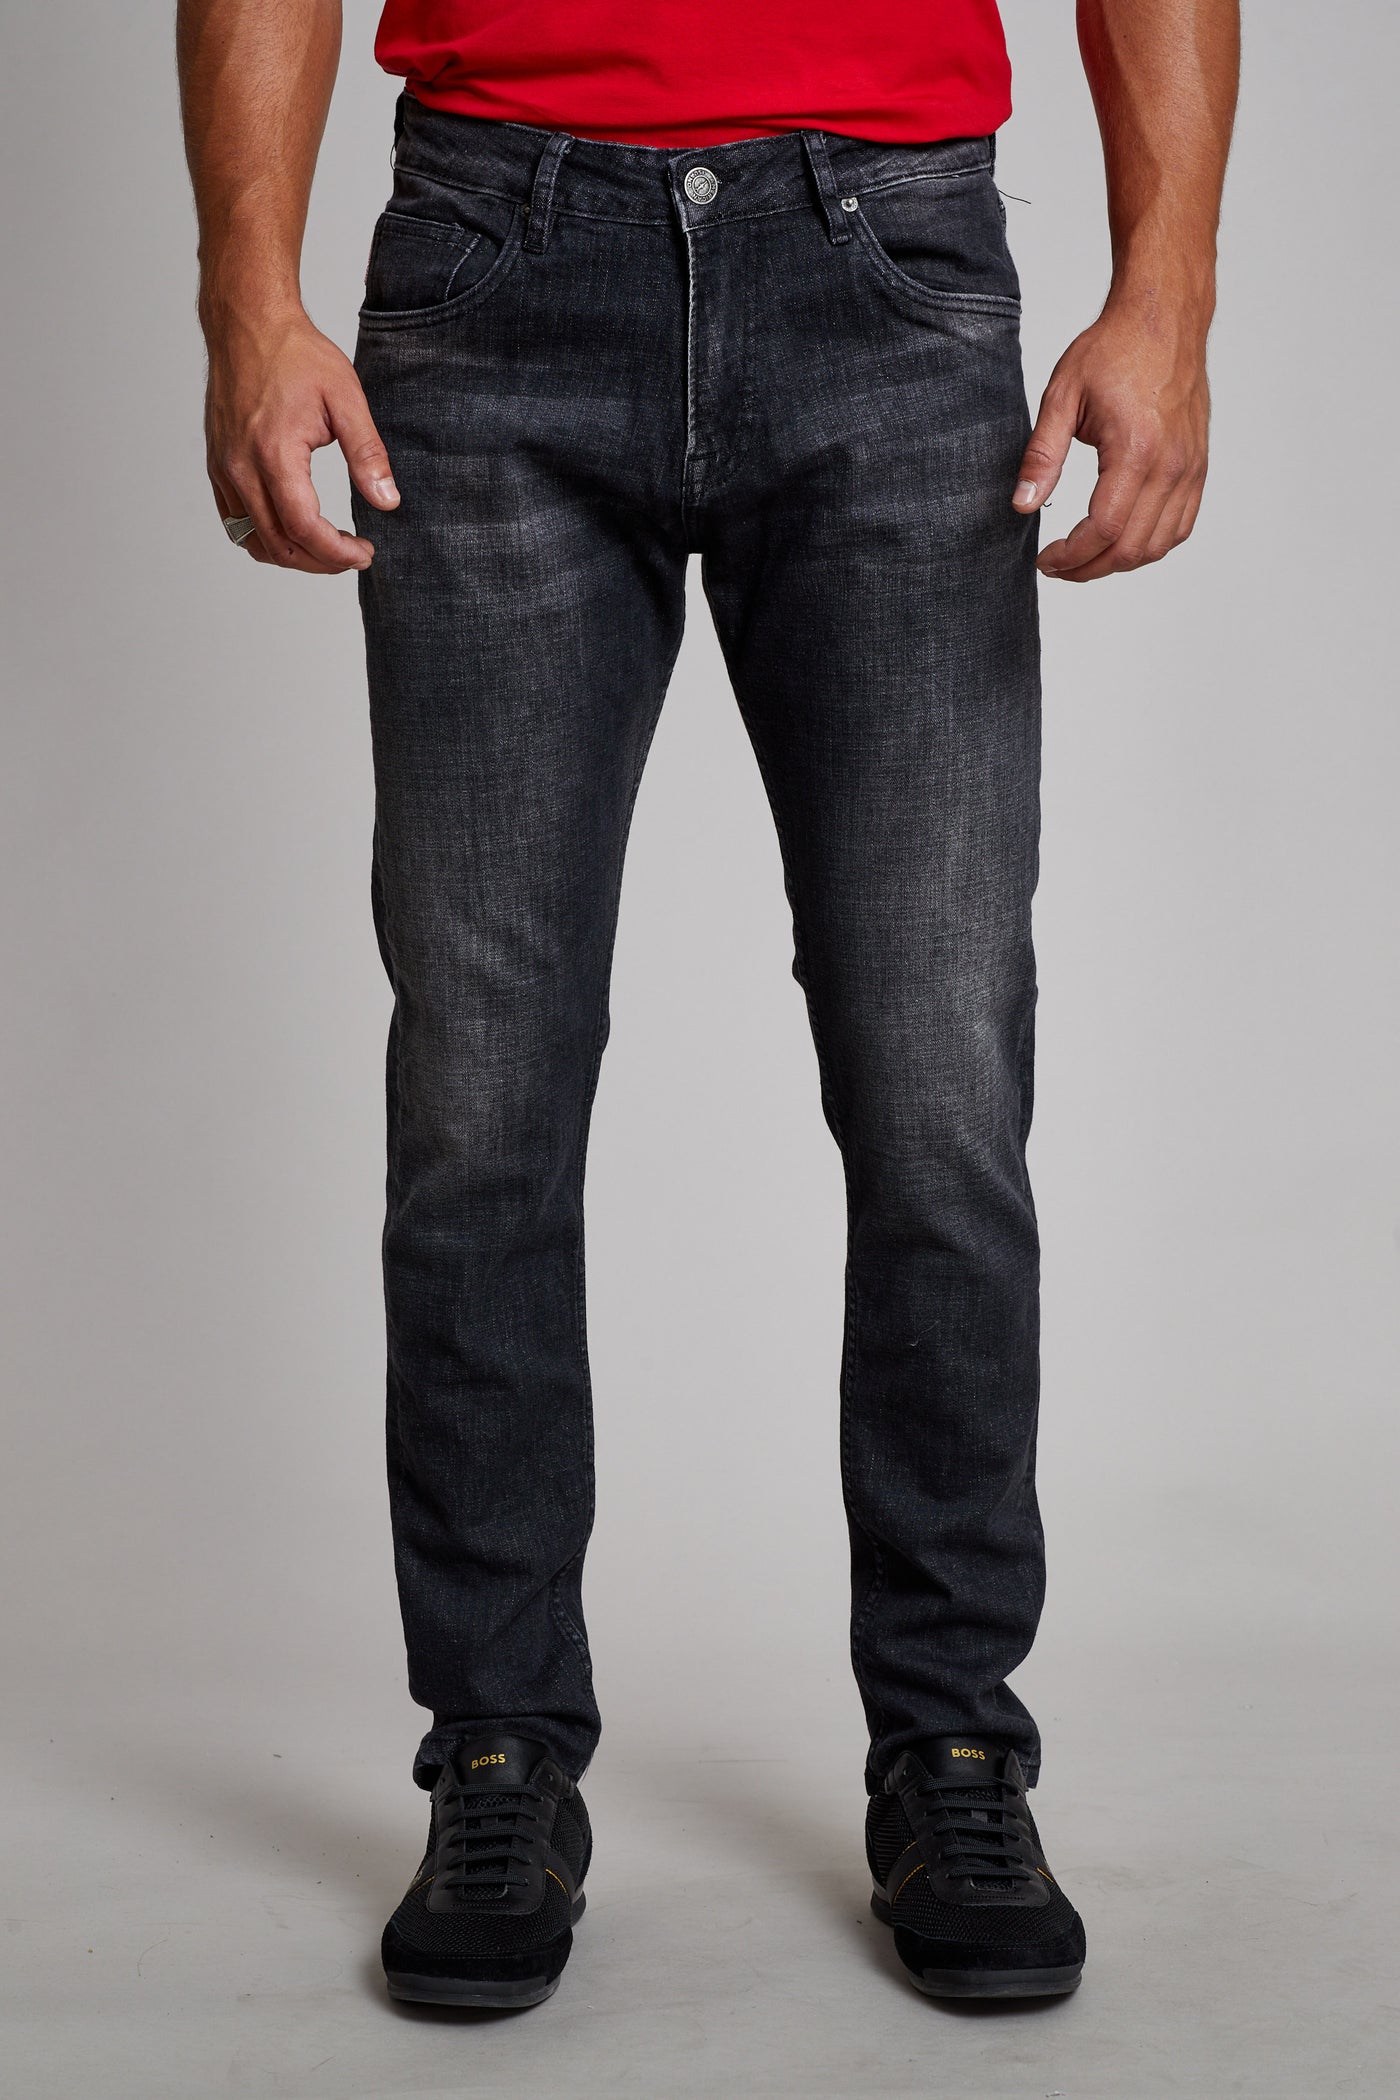 מכנס ג'ינס סלים ZO בצבע אפור 1